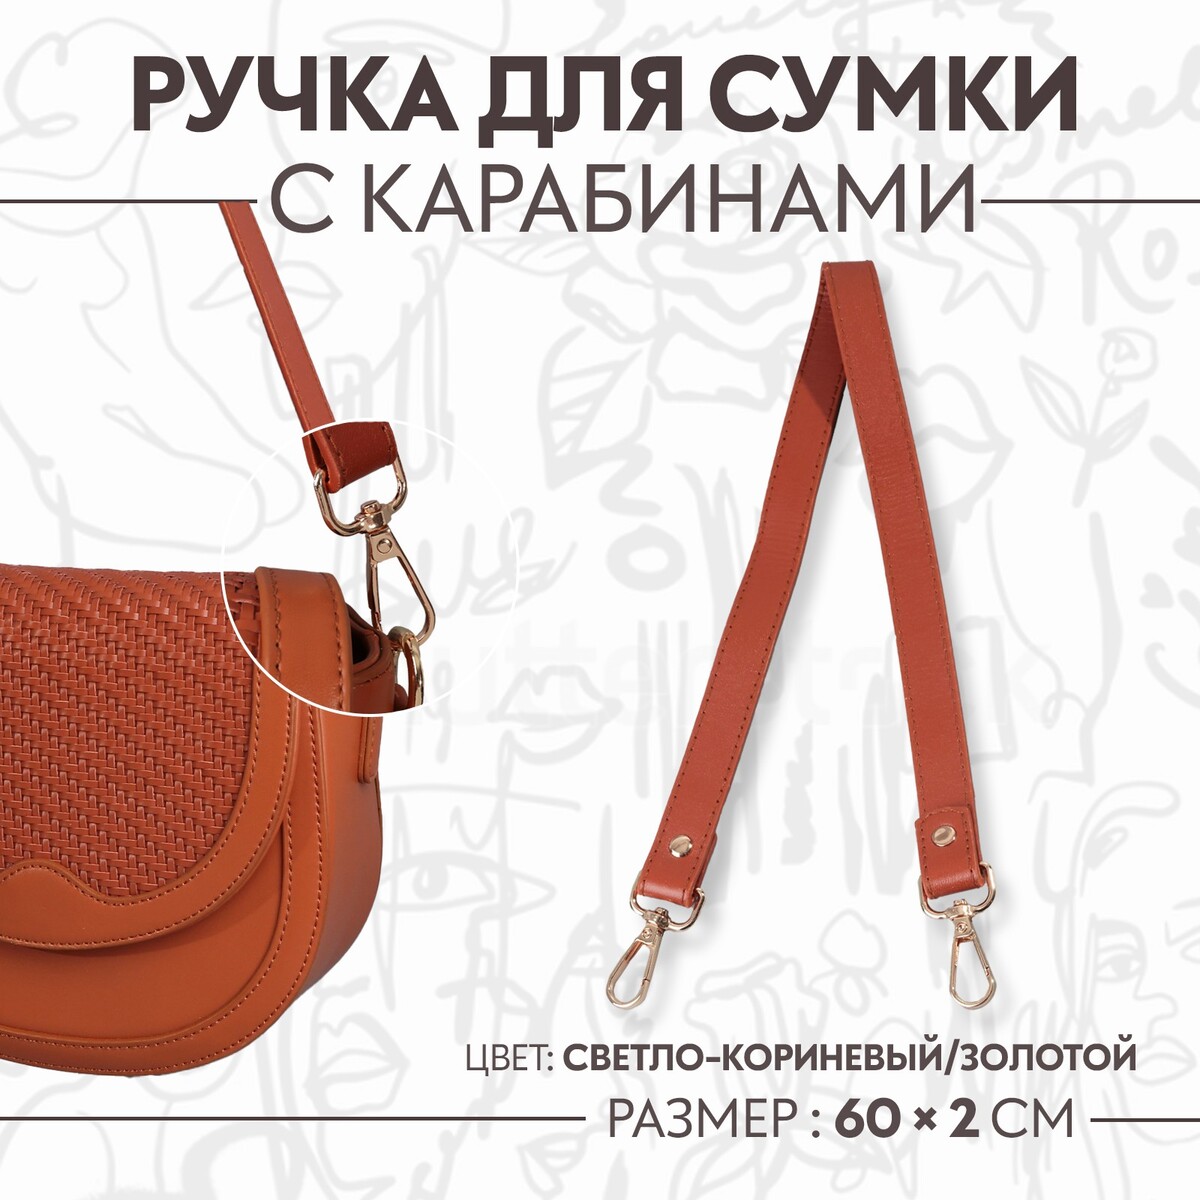 Ручка для сумки, с карабинами, 60 ± 1 см × 2 см, цвет светло-коричневый ручка шнурок для сумки с карабинами 120 × 0 6 см коричневый